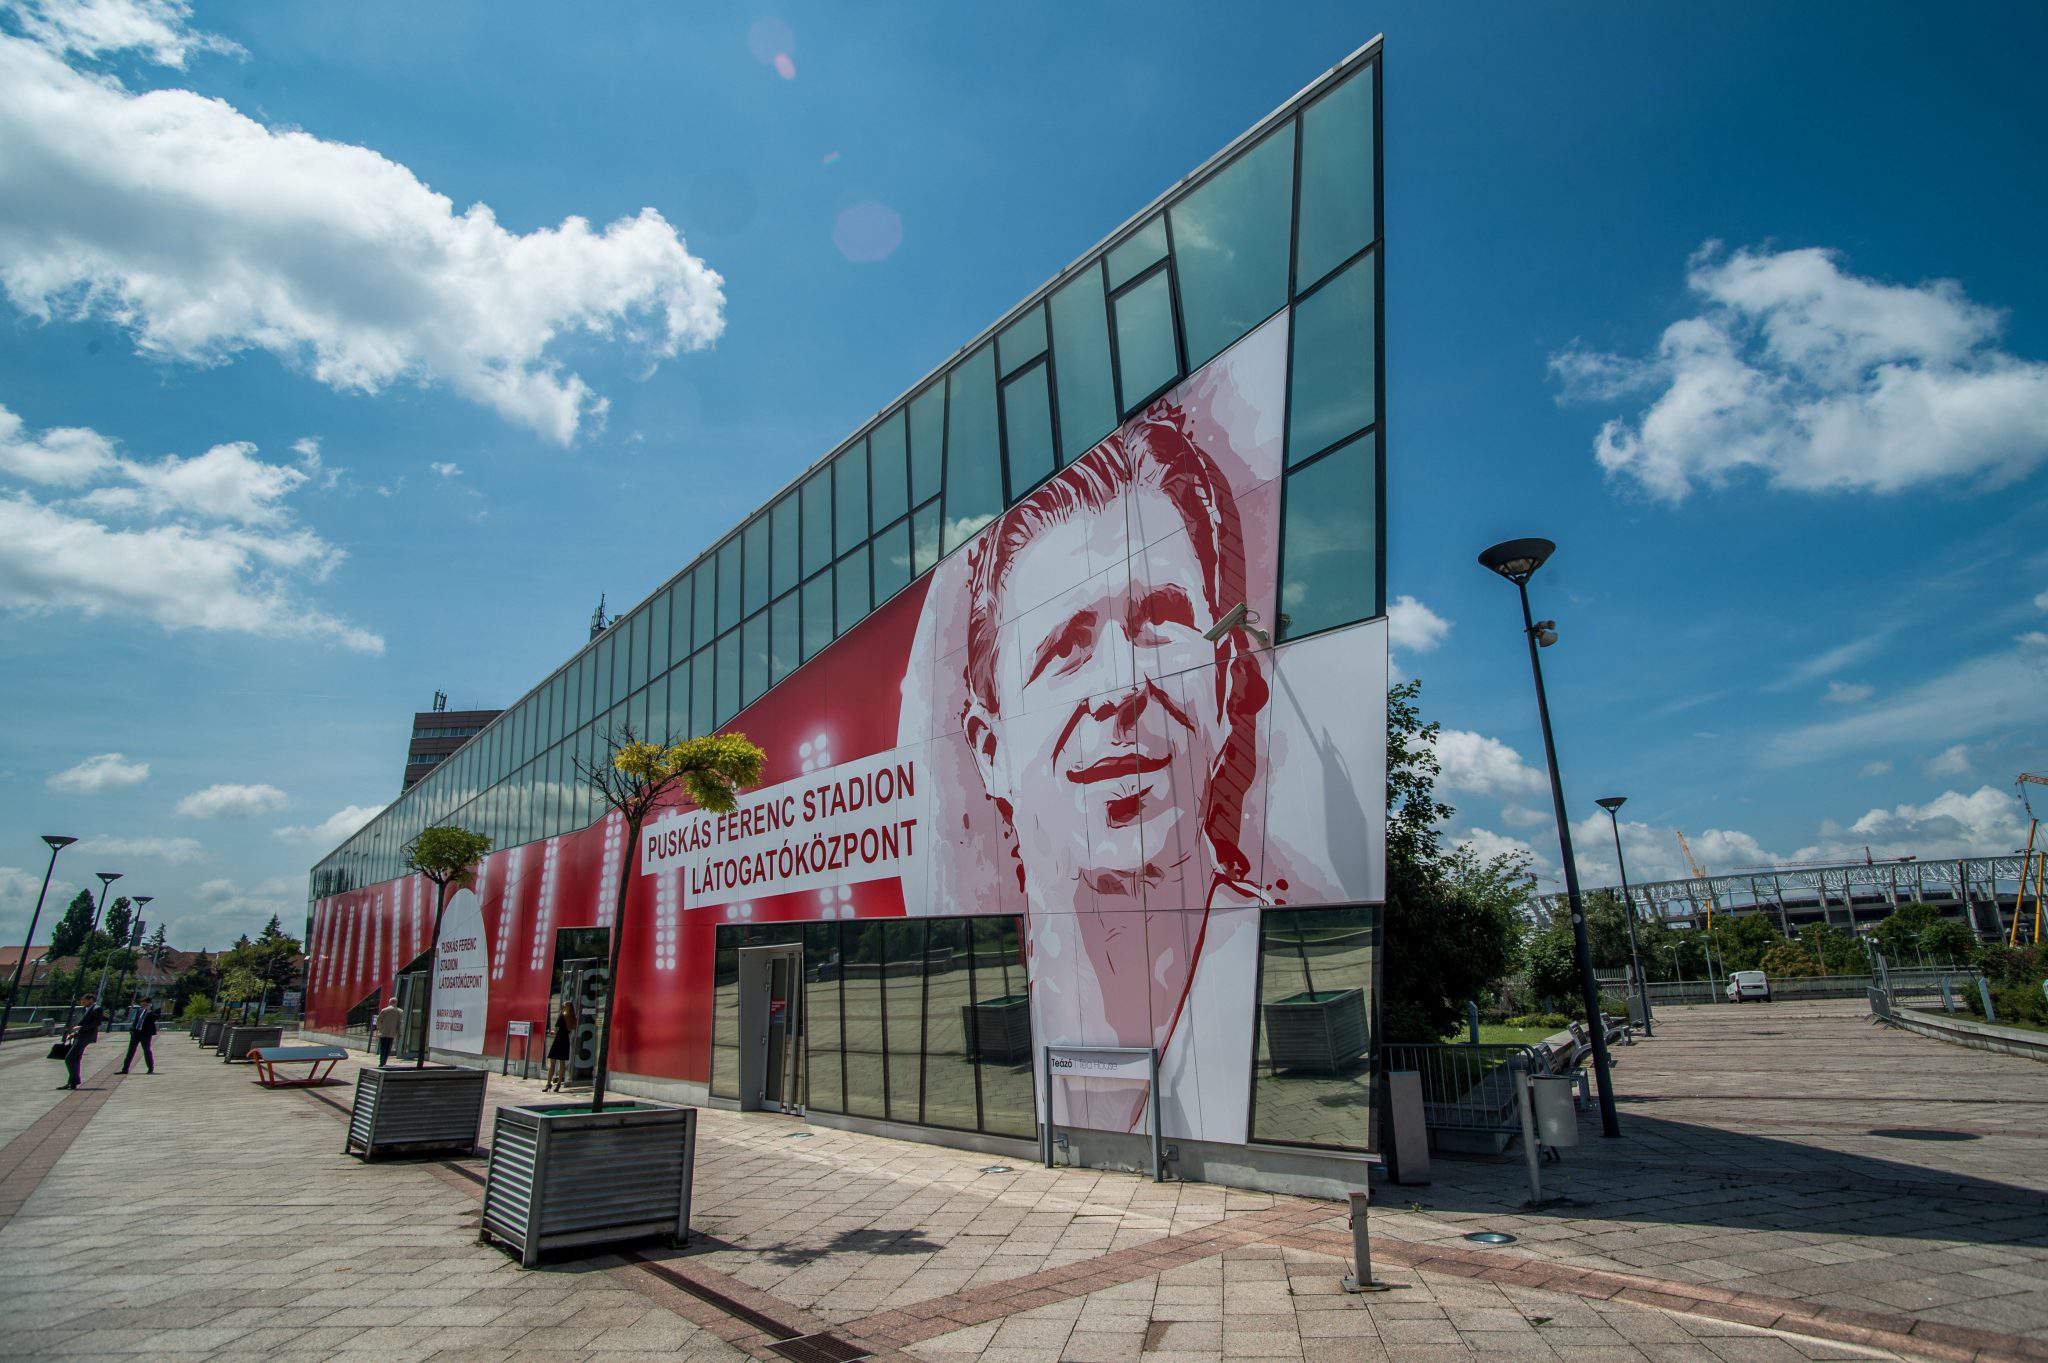 Puskas Ferenc Stadium visitor centre opens